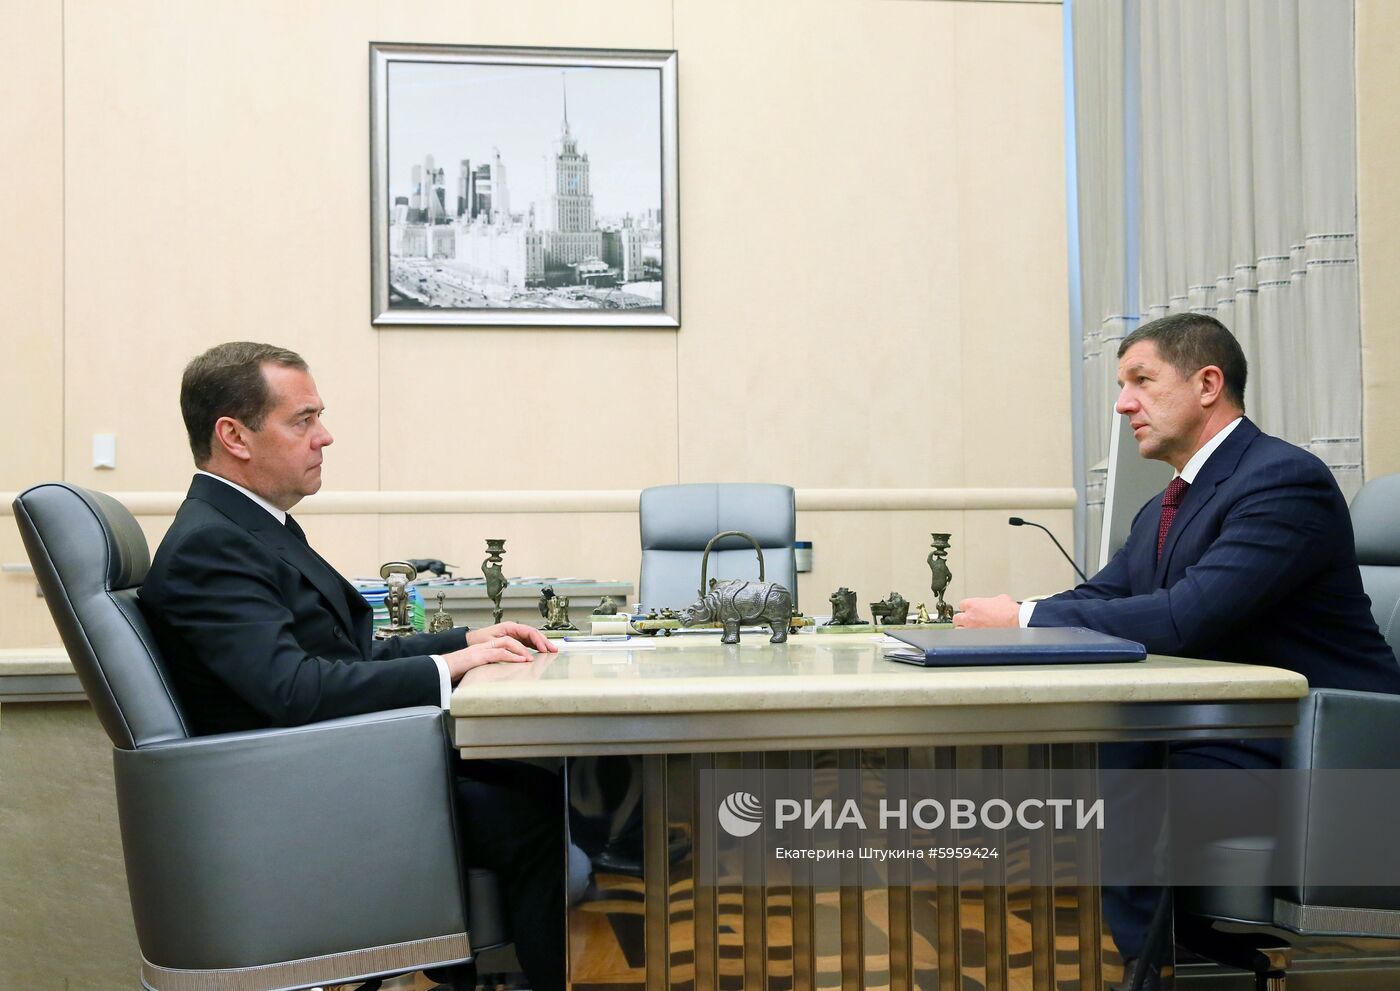 Рабочая встреча премьер-министра РФ Д. Медведева с президентом "Ростелеком" М. Осеевским